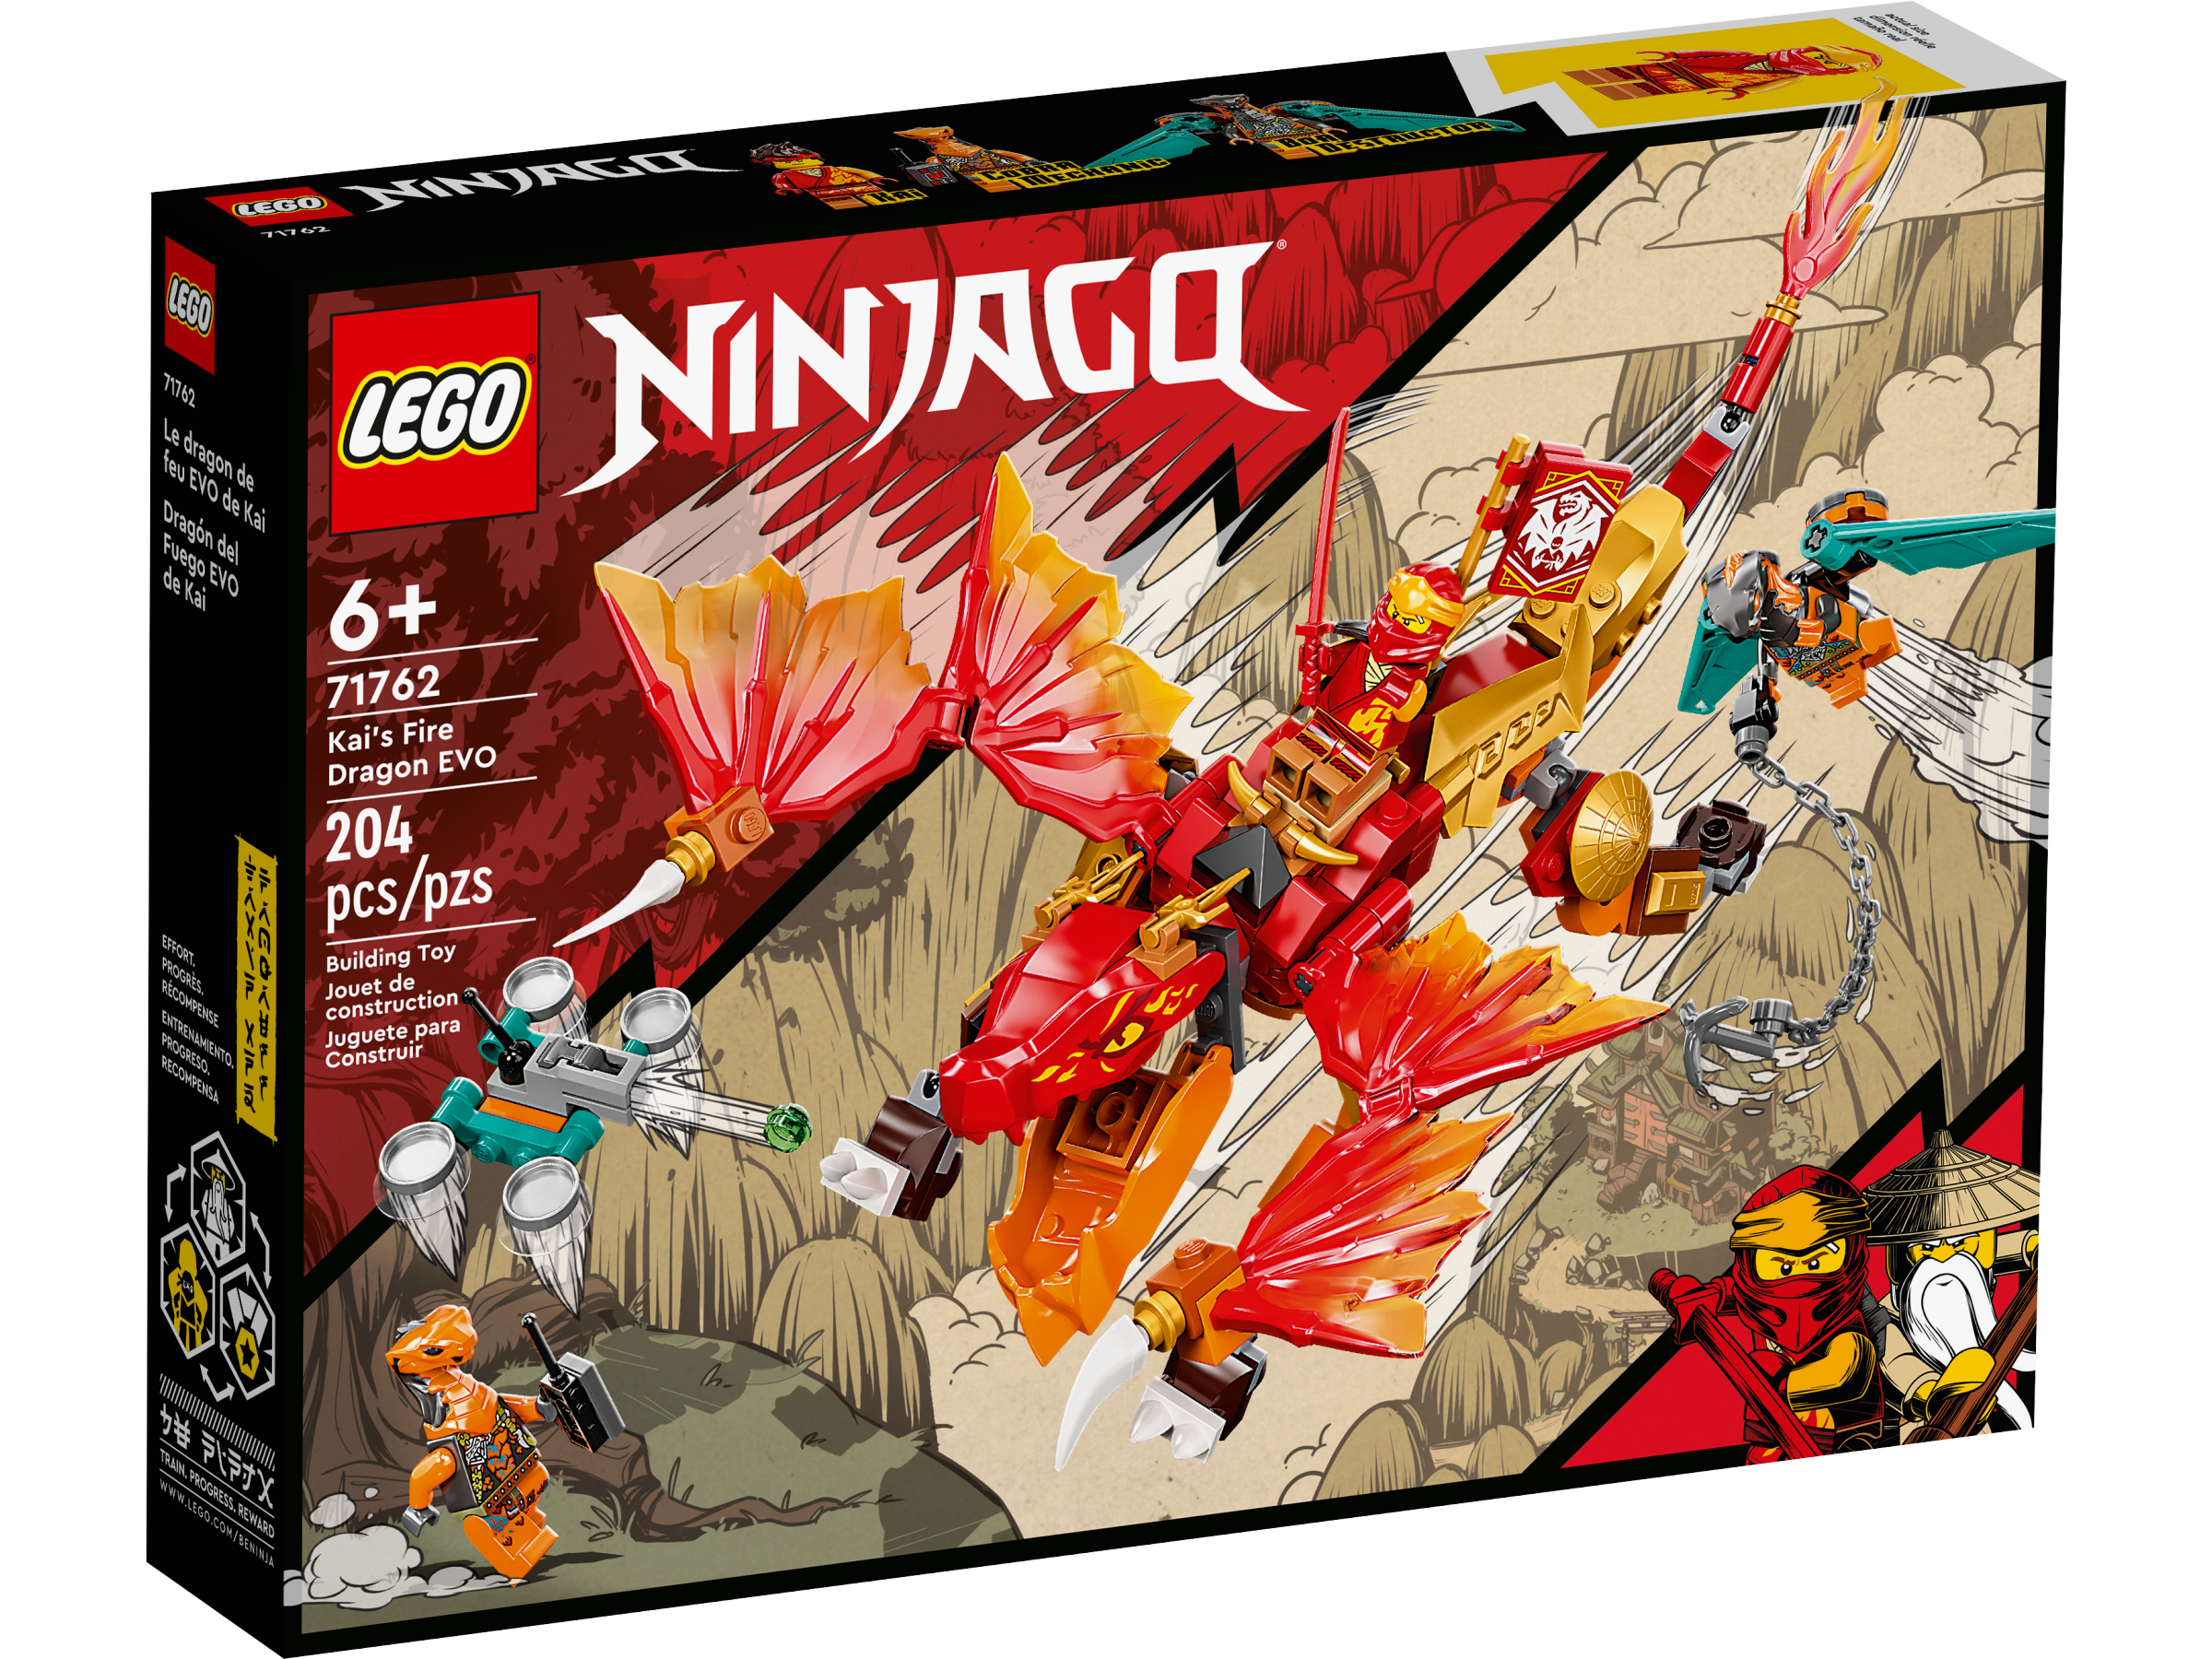 71762 Kai's Fire Dragon EVO | Ninjago Wiki | Fandom